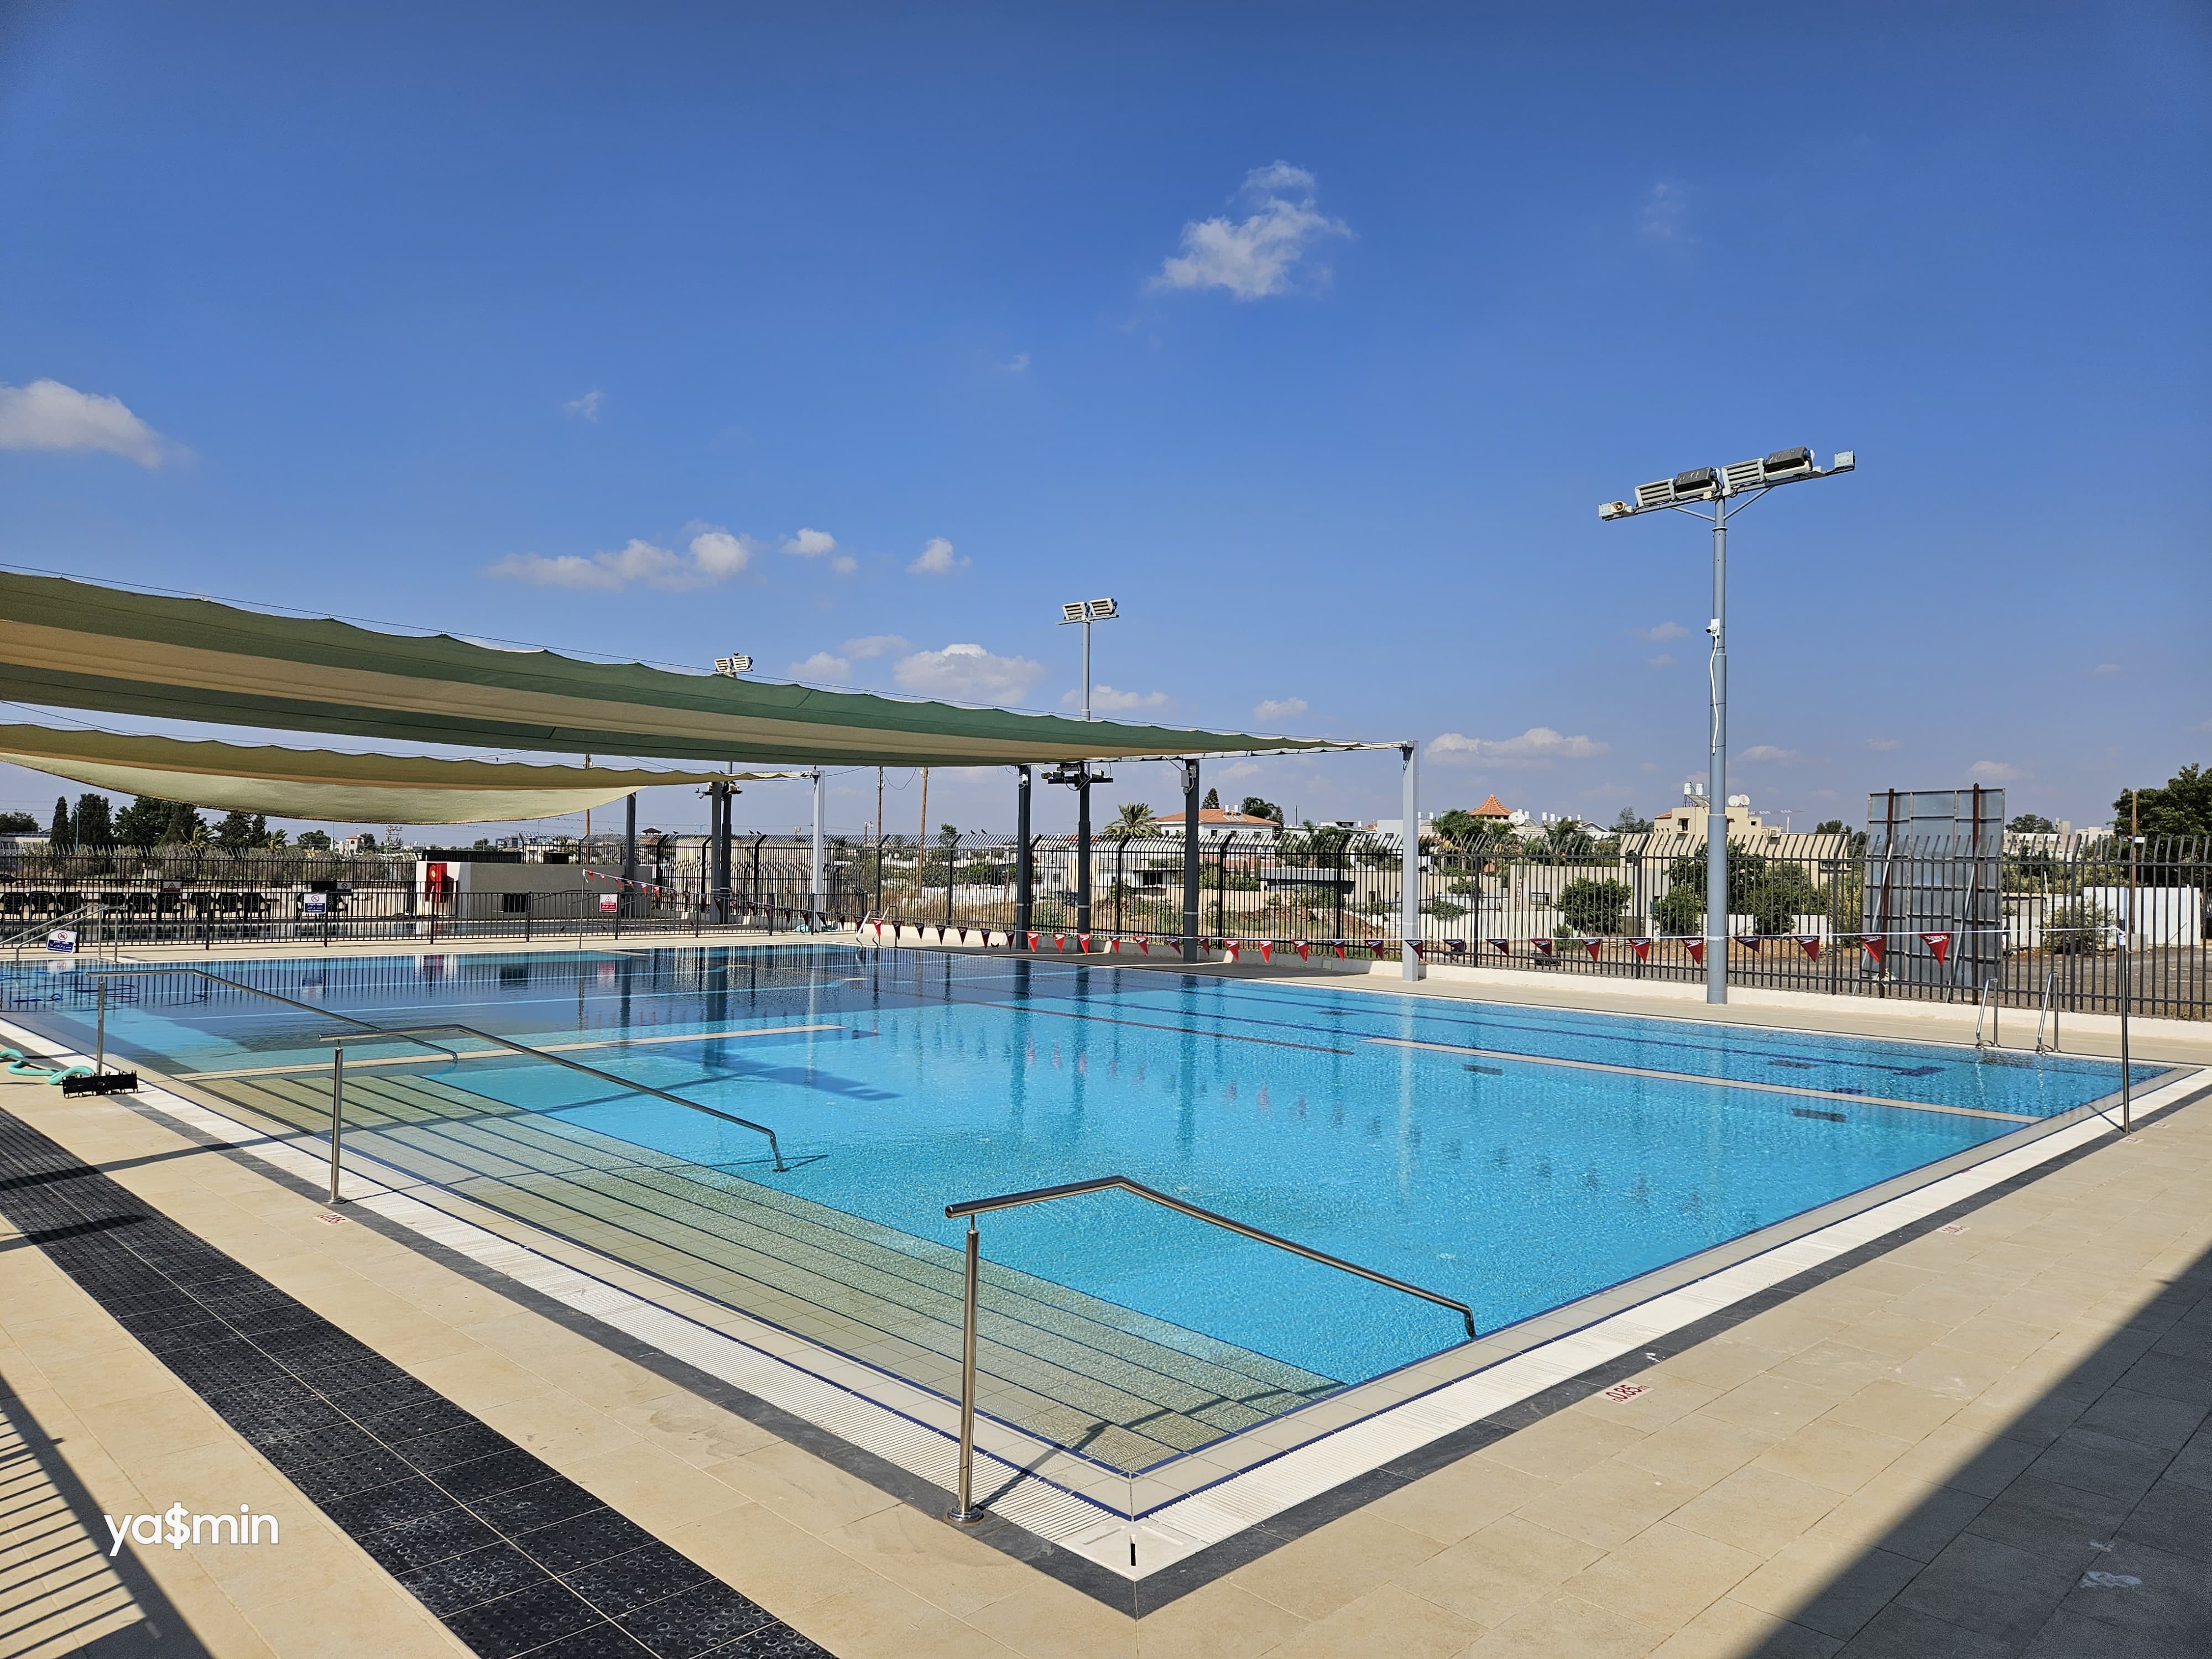  اللد: بركة سباحة وحدائق وصالة ألعاب رياضية .. افتتاح مجمع هولمز بليس شنير 